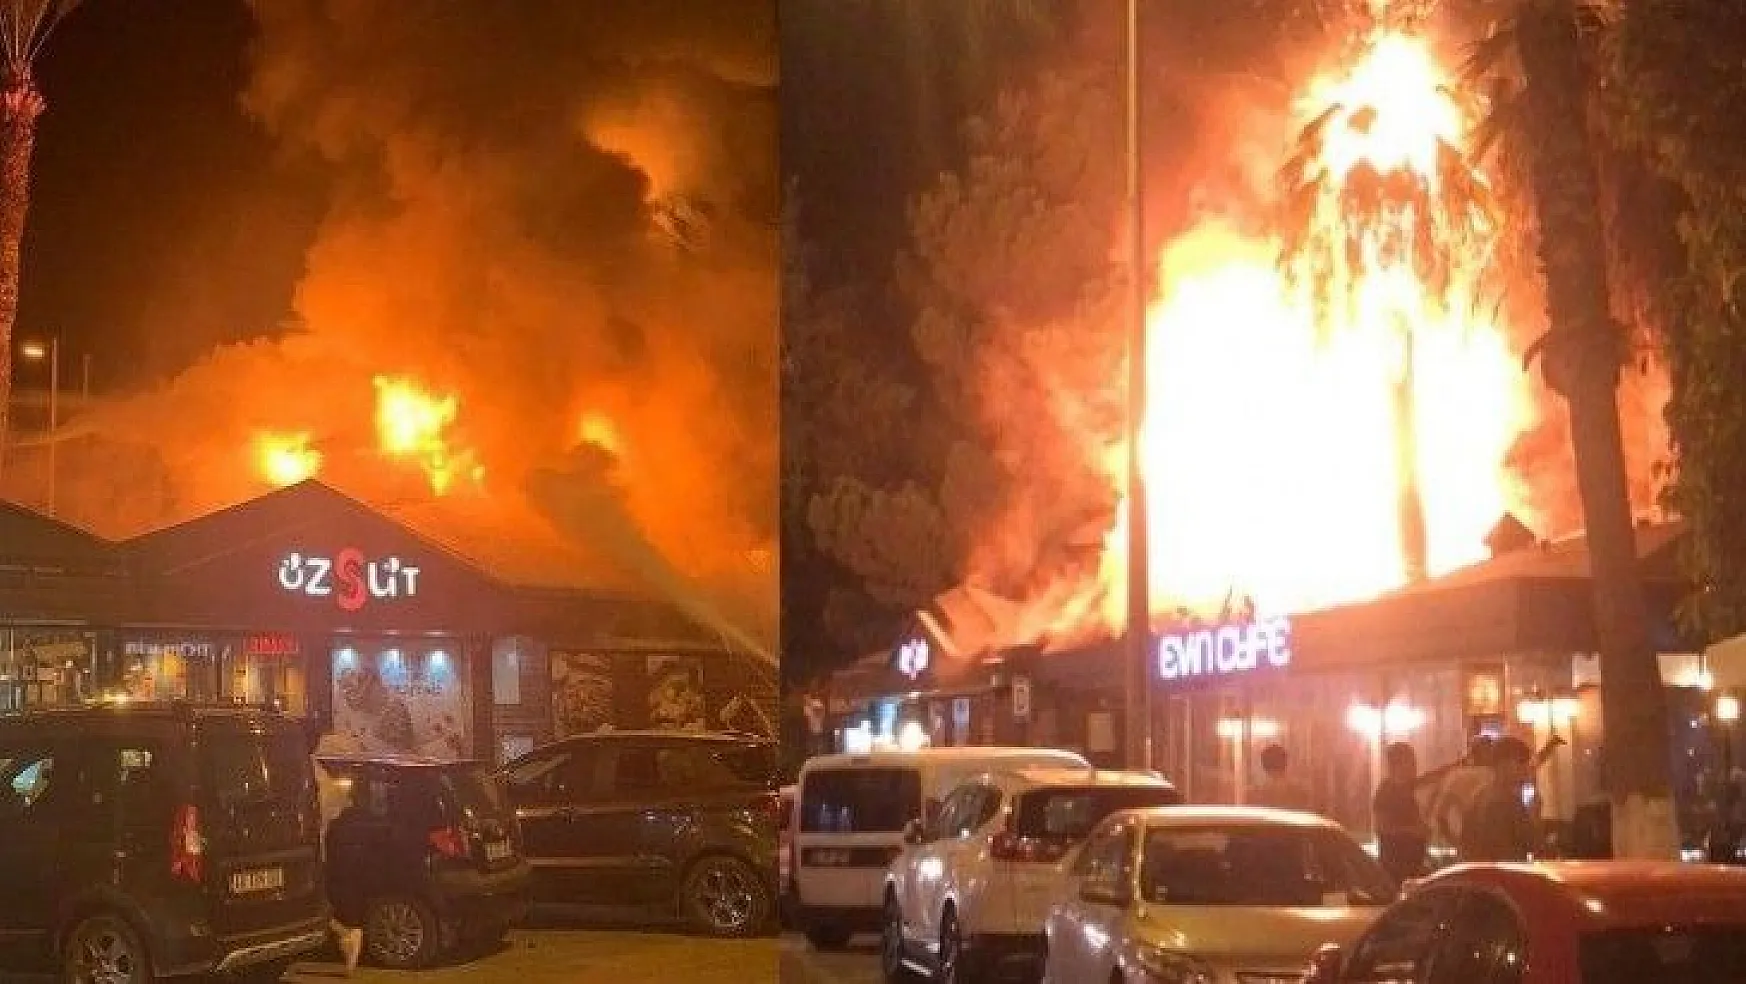 Fethiye'de iki işyerinin çatısı alev alev yandı